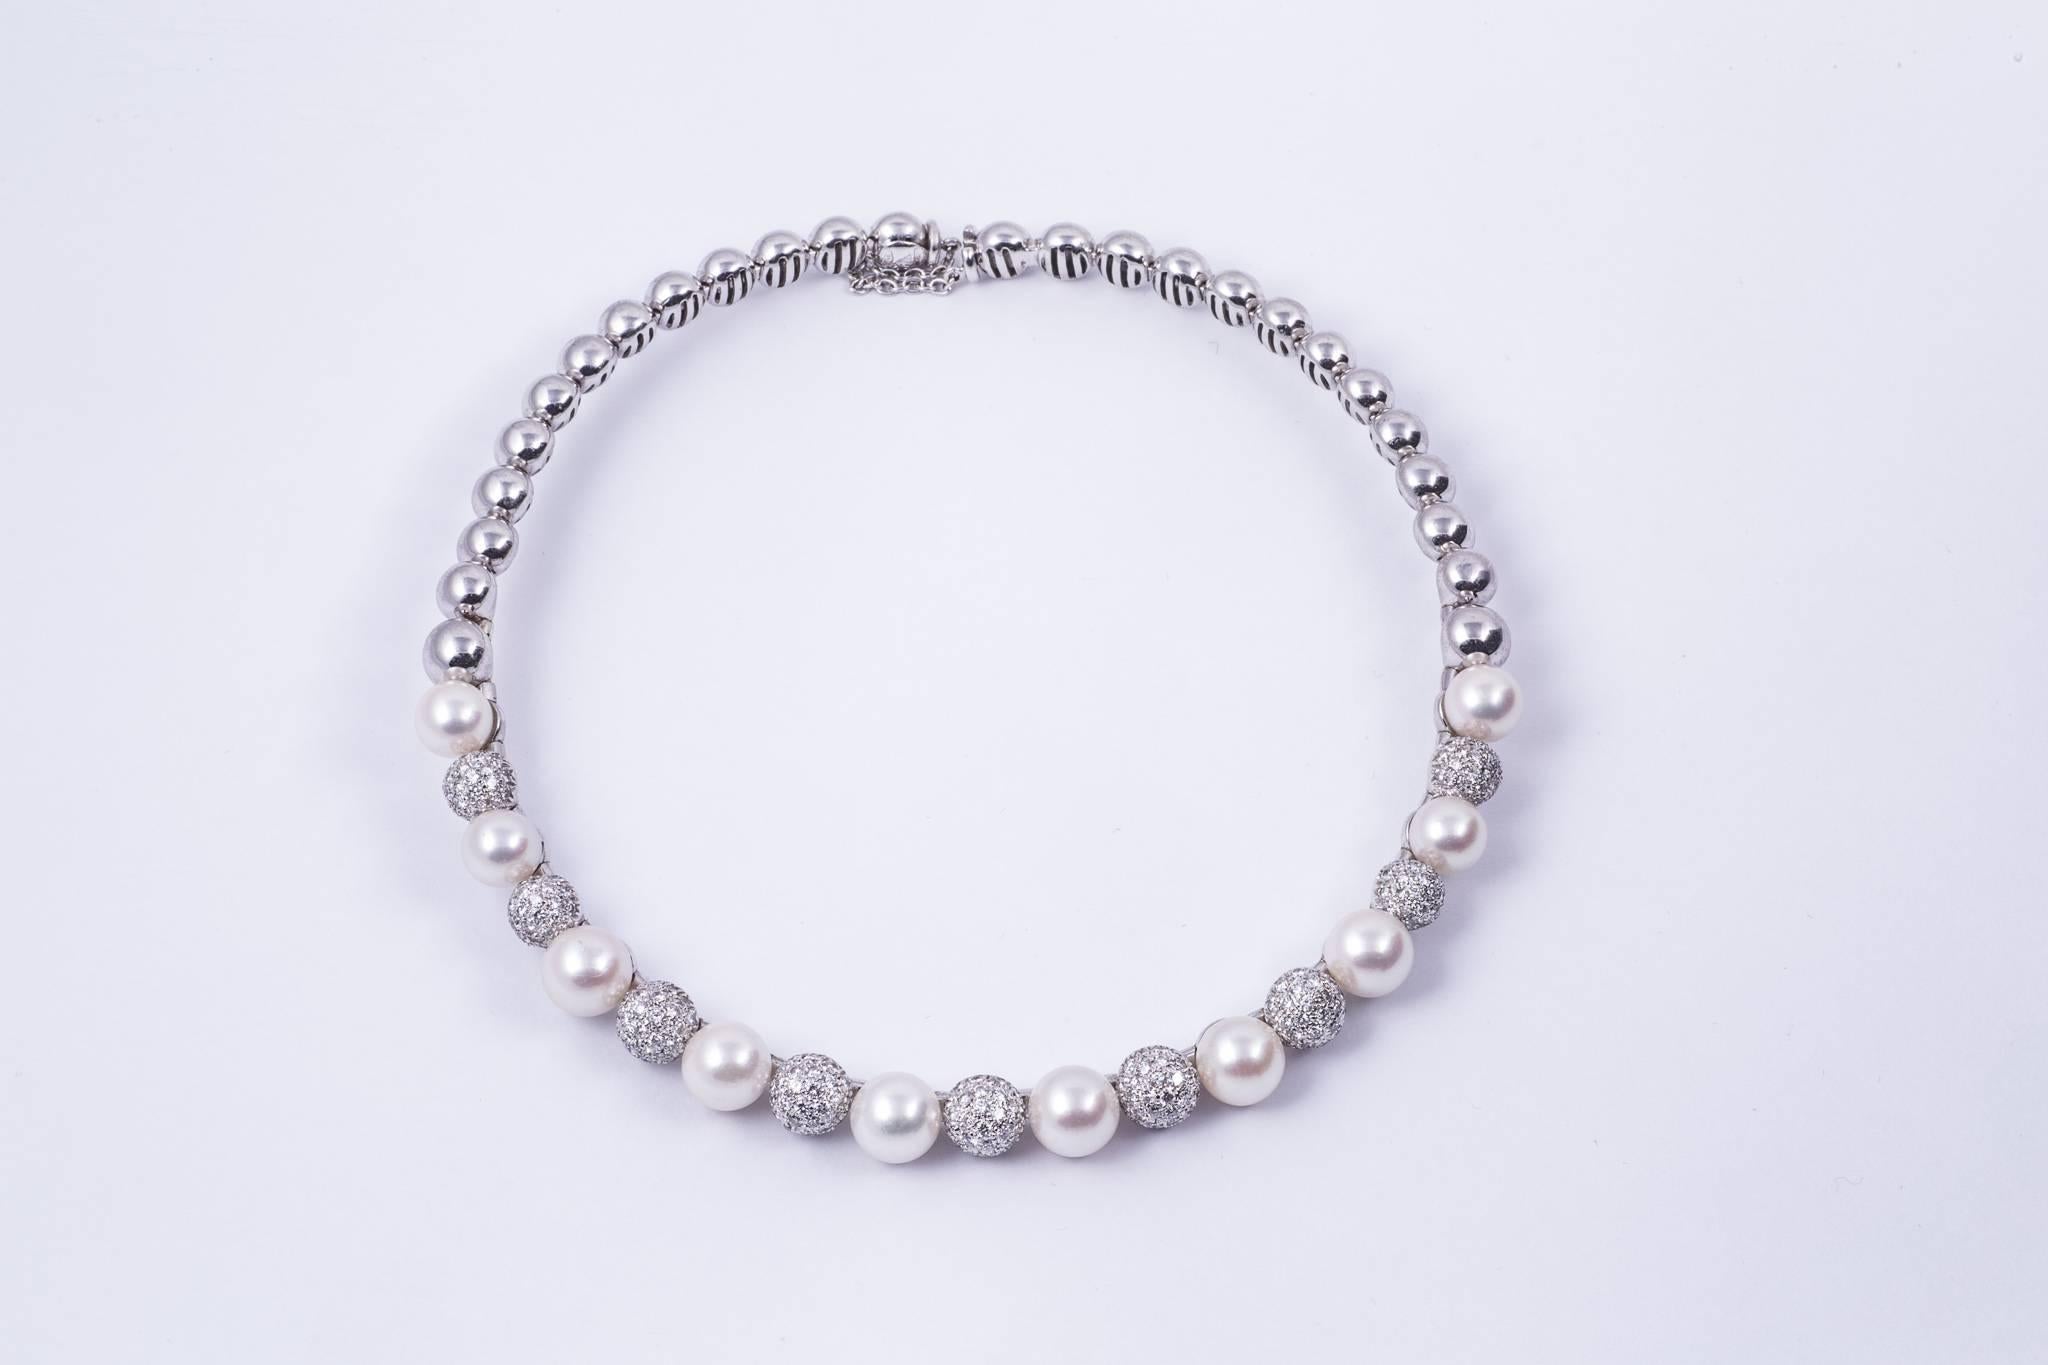 Elegant collier de perles de culture d'Akoya et de diamants. La perle centrale mesure 9,20 mm et descend jusqu'à 8,2 mm. Il y a 10 perles au total. Entre les perles se trouvent 9 boules de diamants pavés. Le poids total du diamant est d'environ